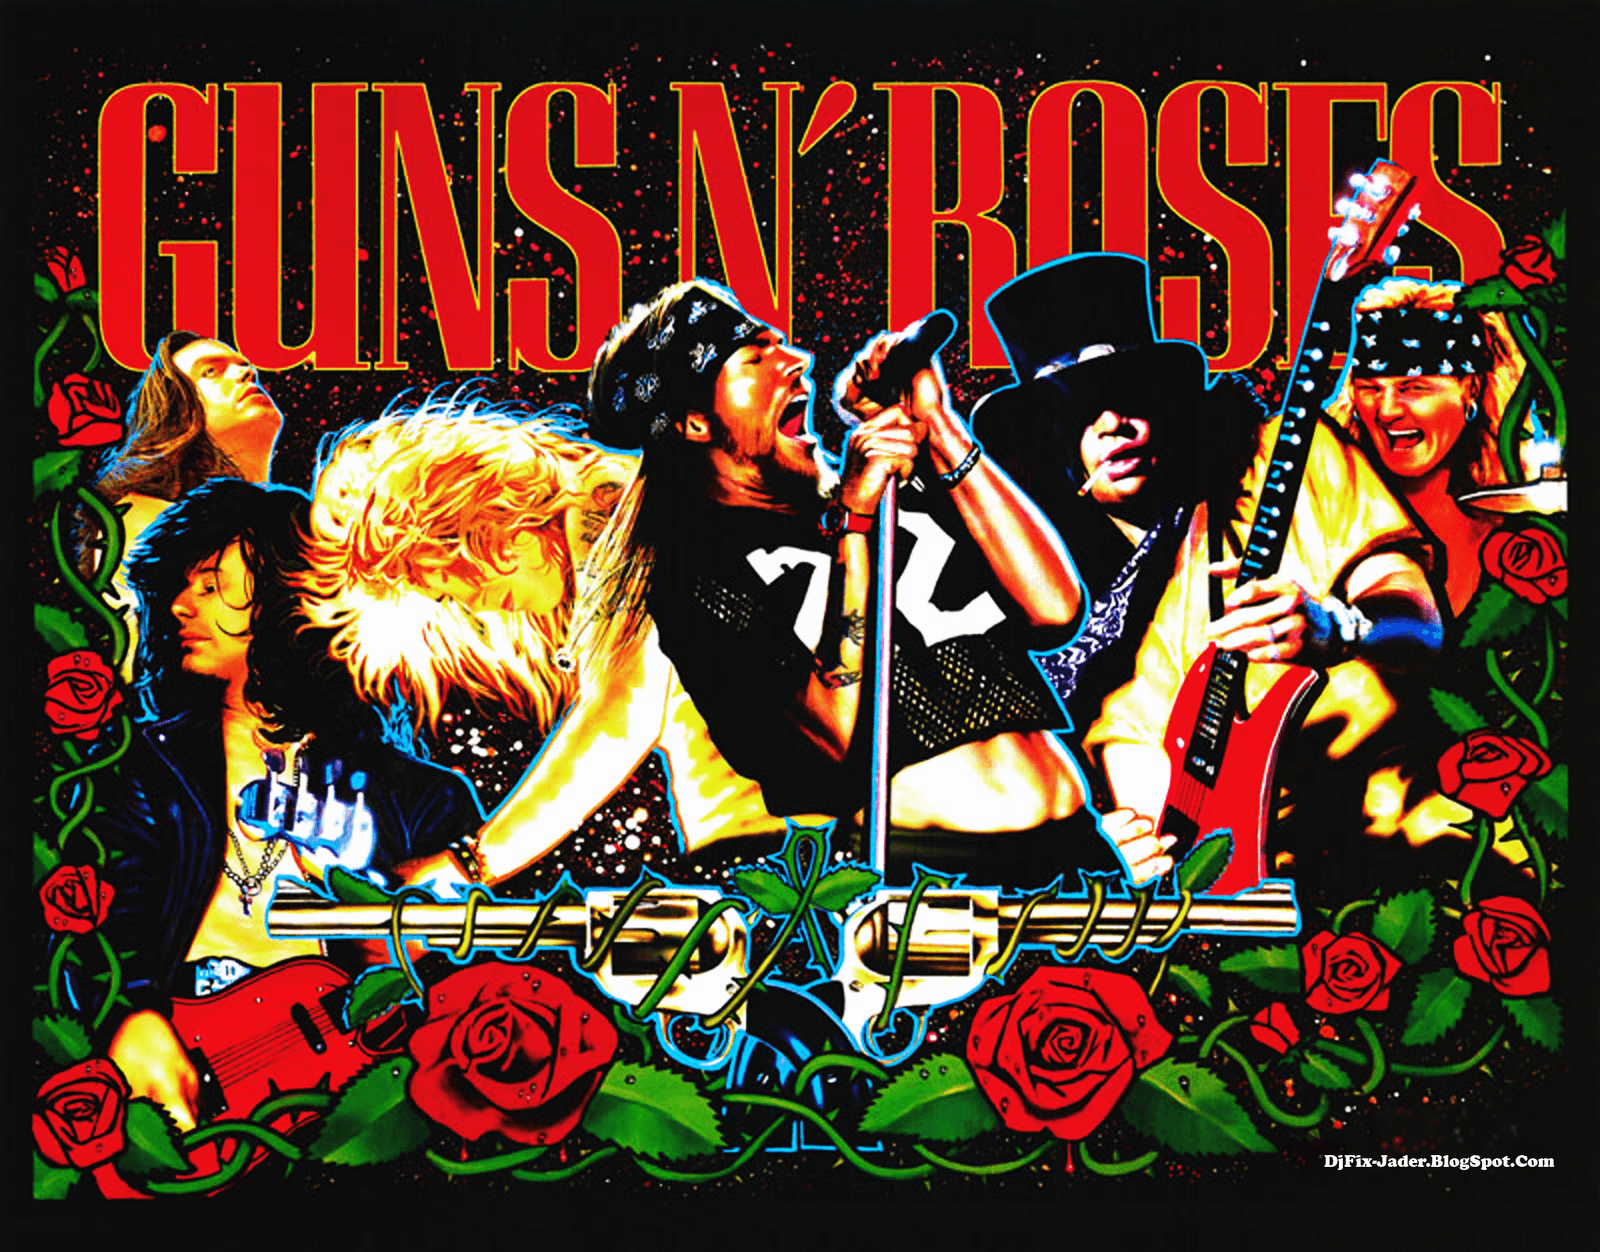 Best image about Guns N Roses. Steven adler